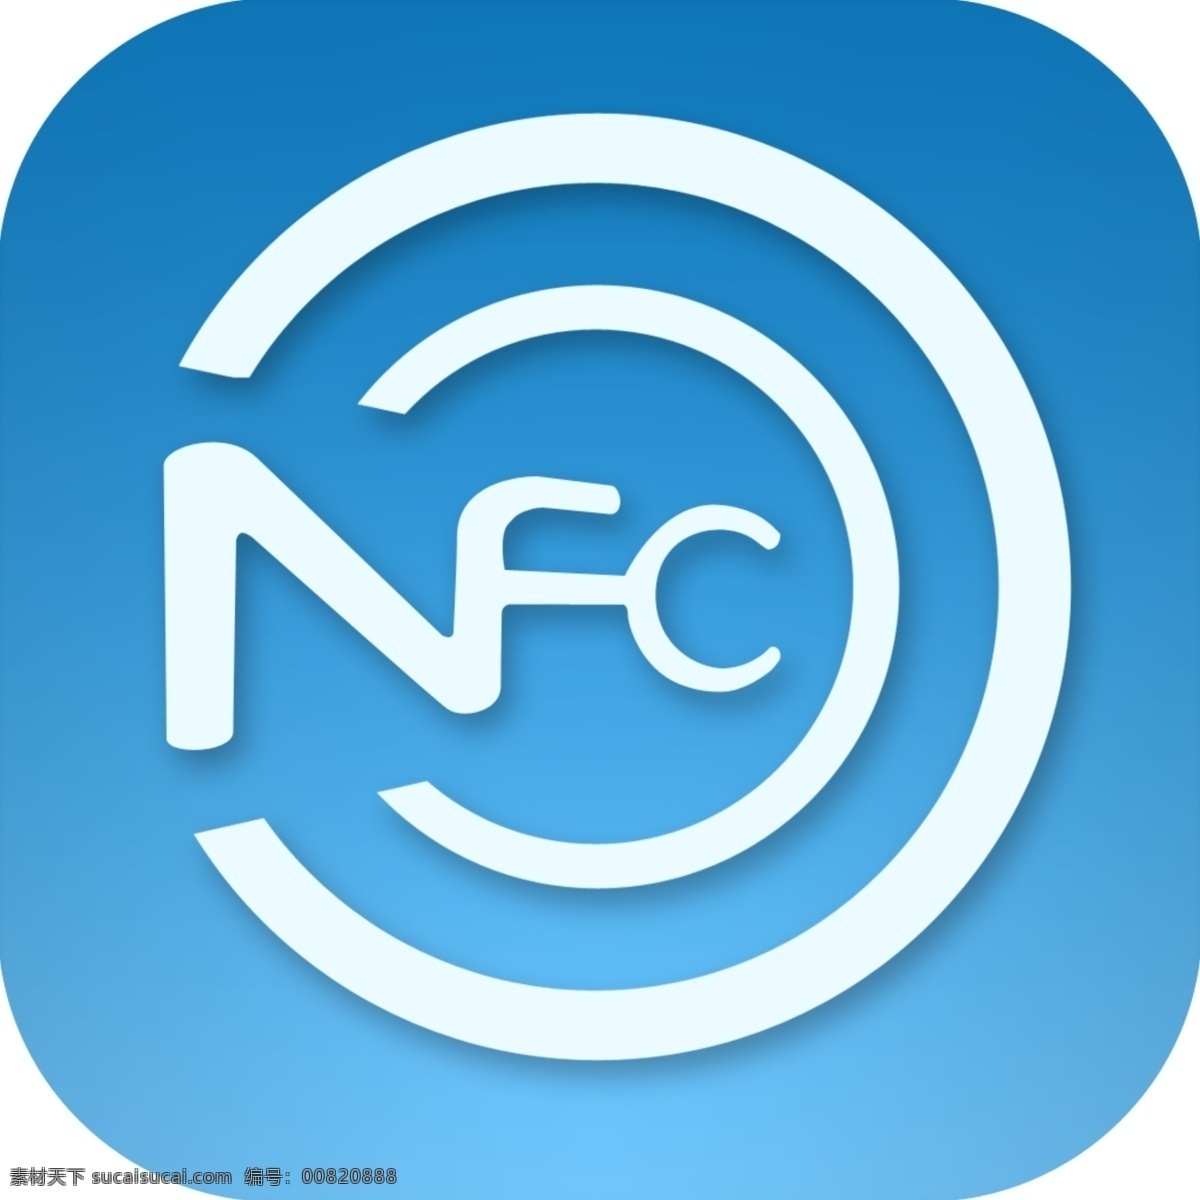 nfc图标 nfc 图标 渐变 logo 手机 标志图标 其他图标